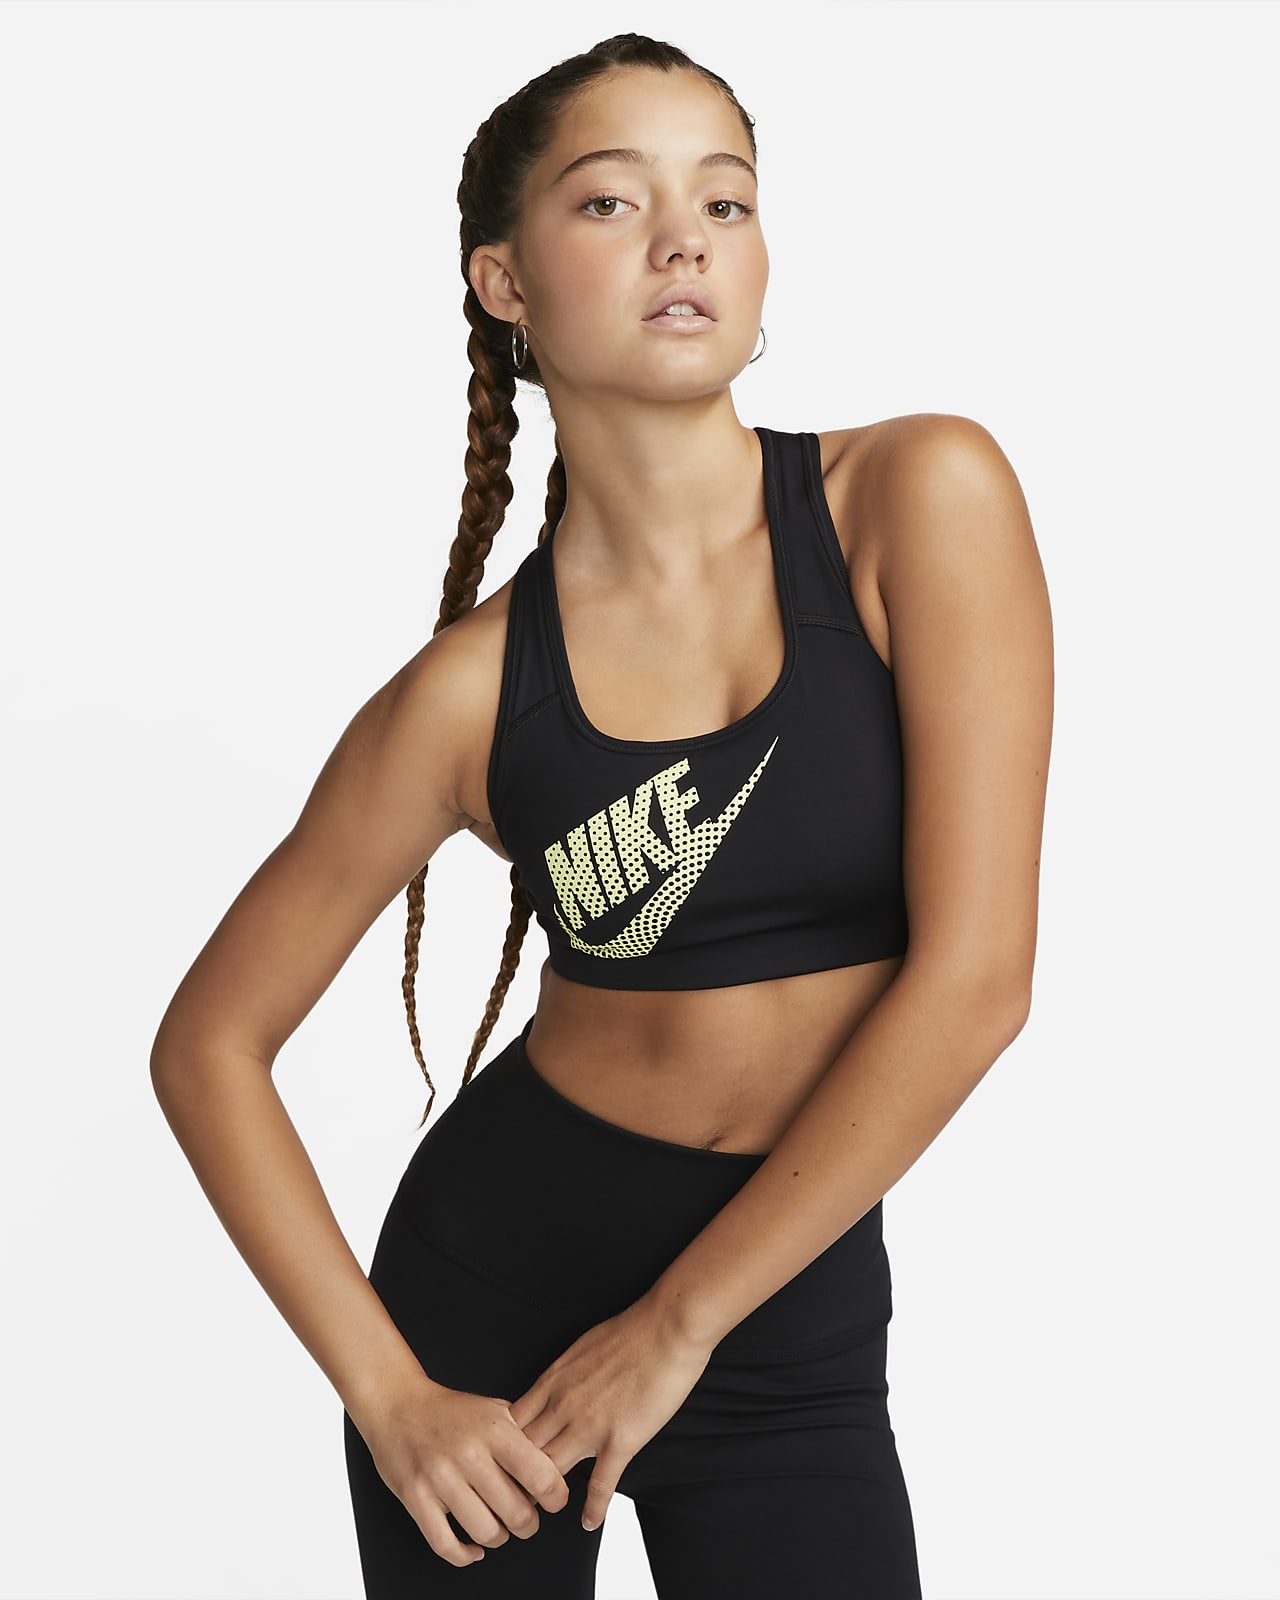 Bra per la danza non imbottito a sostegno medio Nike Swoosh – Donna